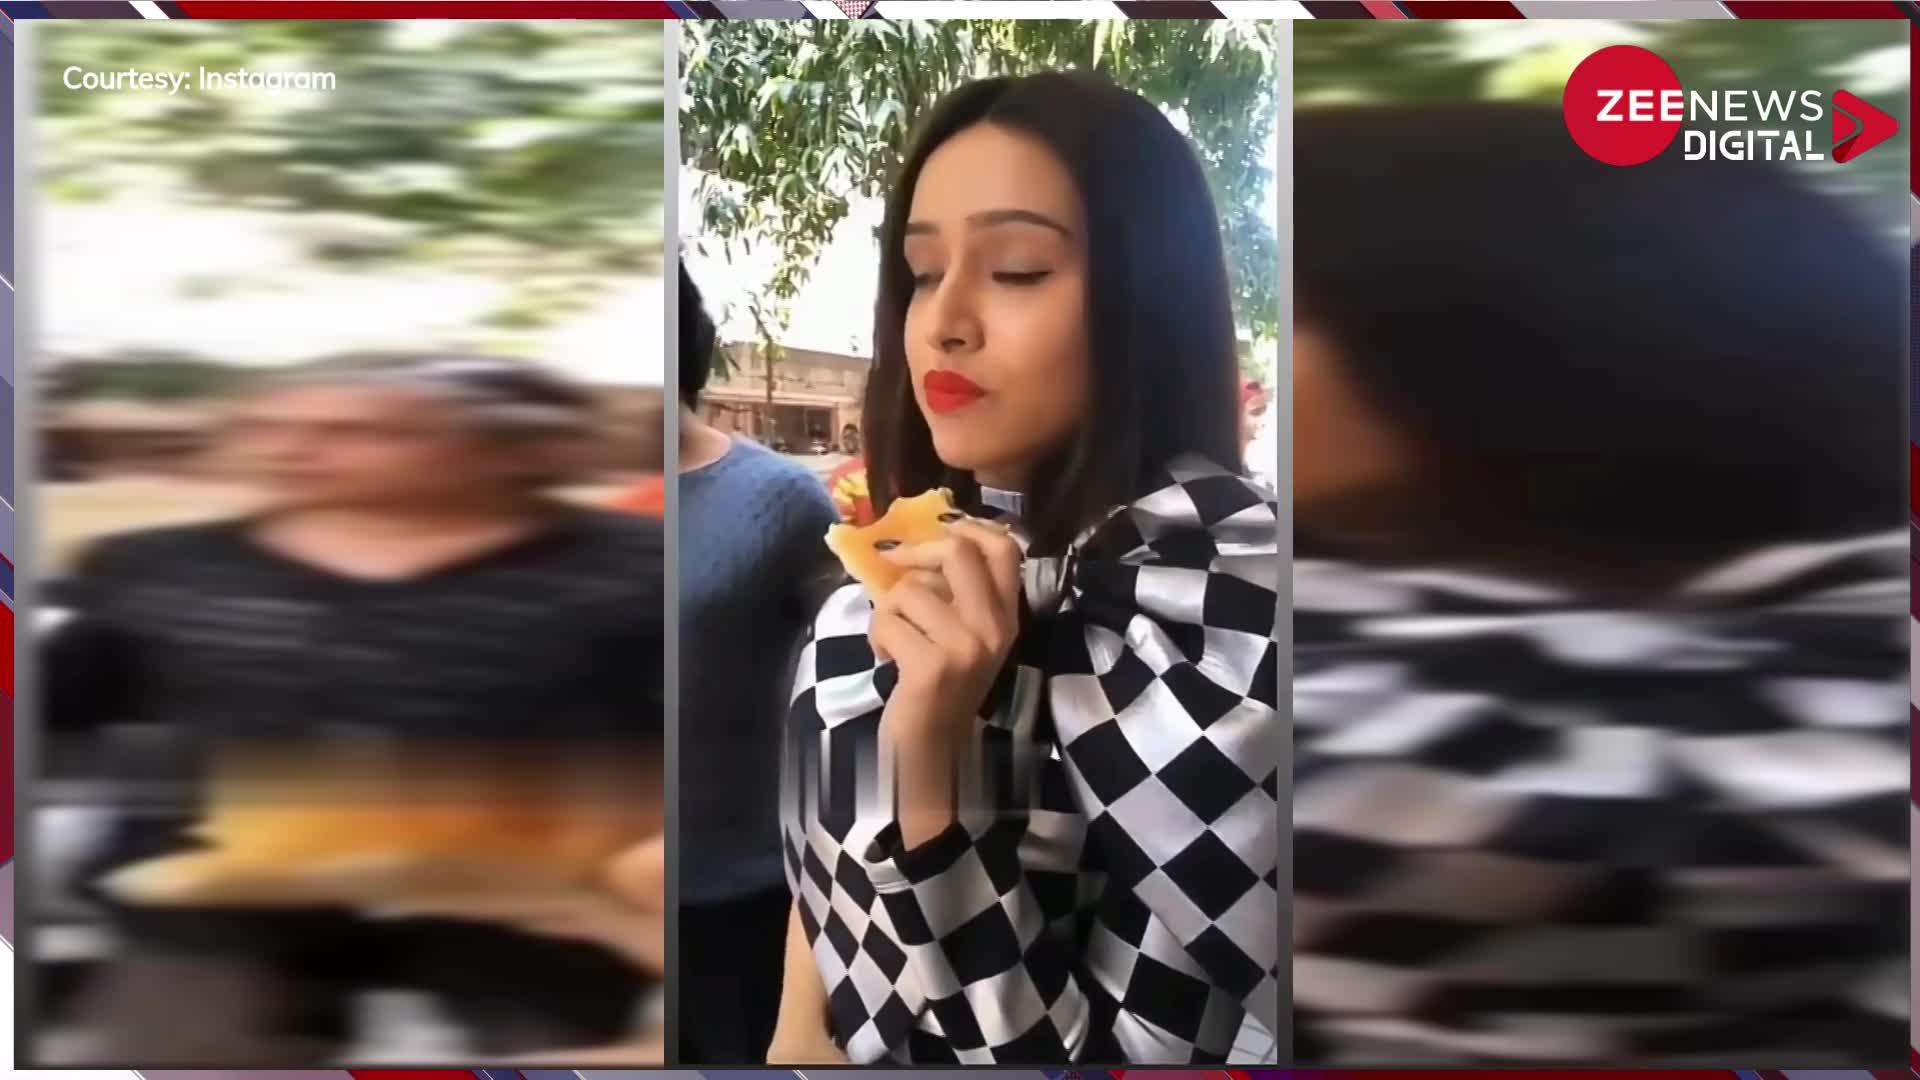 वडा पाव खाते-खाते Shraddha Kapoor ने पास खड़ी लड़की को किया ईशारा, लोगों ने कहा- 'आपका झूठा नहीं खाना'